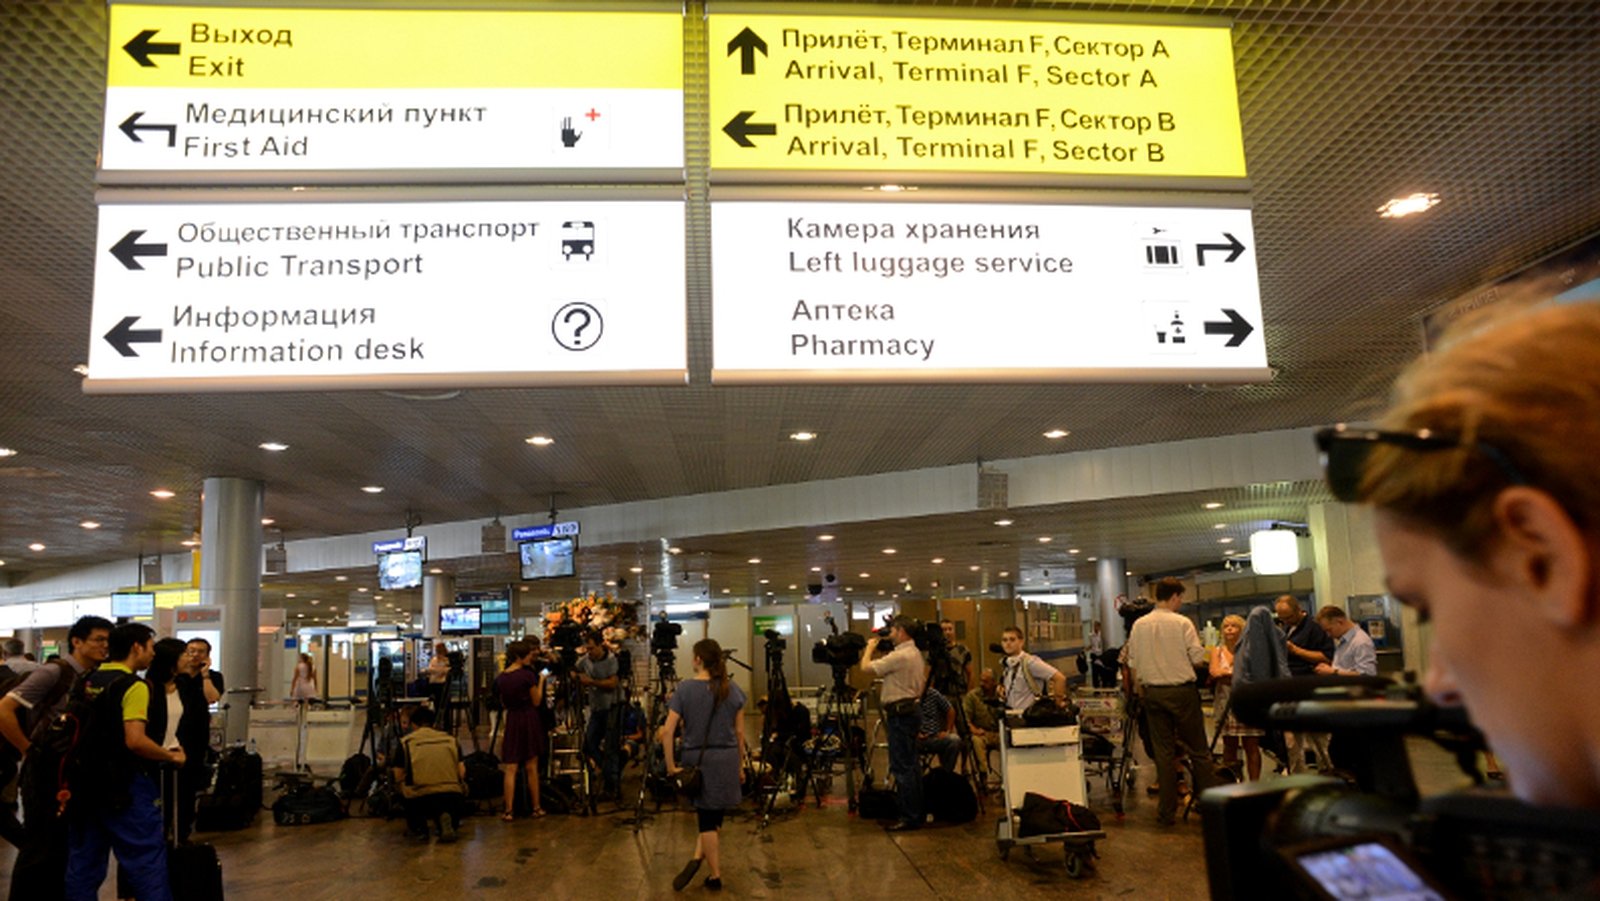 Шереметьево фильтрация украинцев. Транзитная зона Шереметьево. Аэропорт Шереметьево терминал в. Транзит в аэропорту. Терминал прибытия.